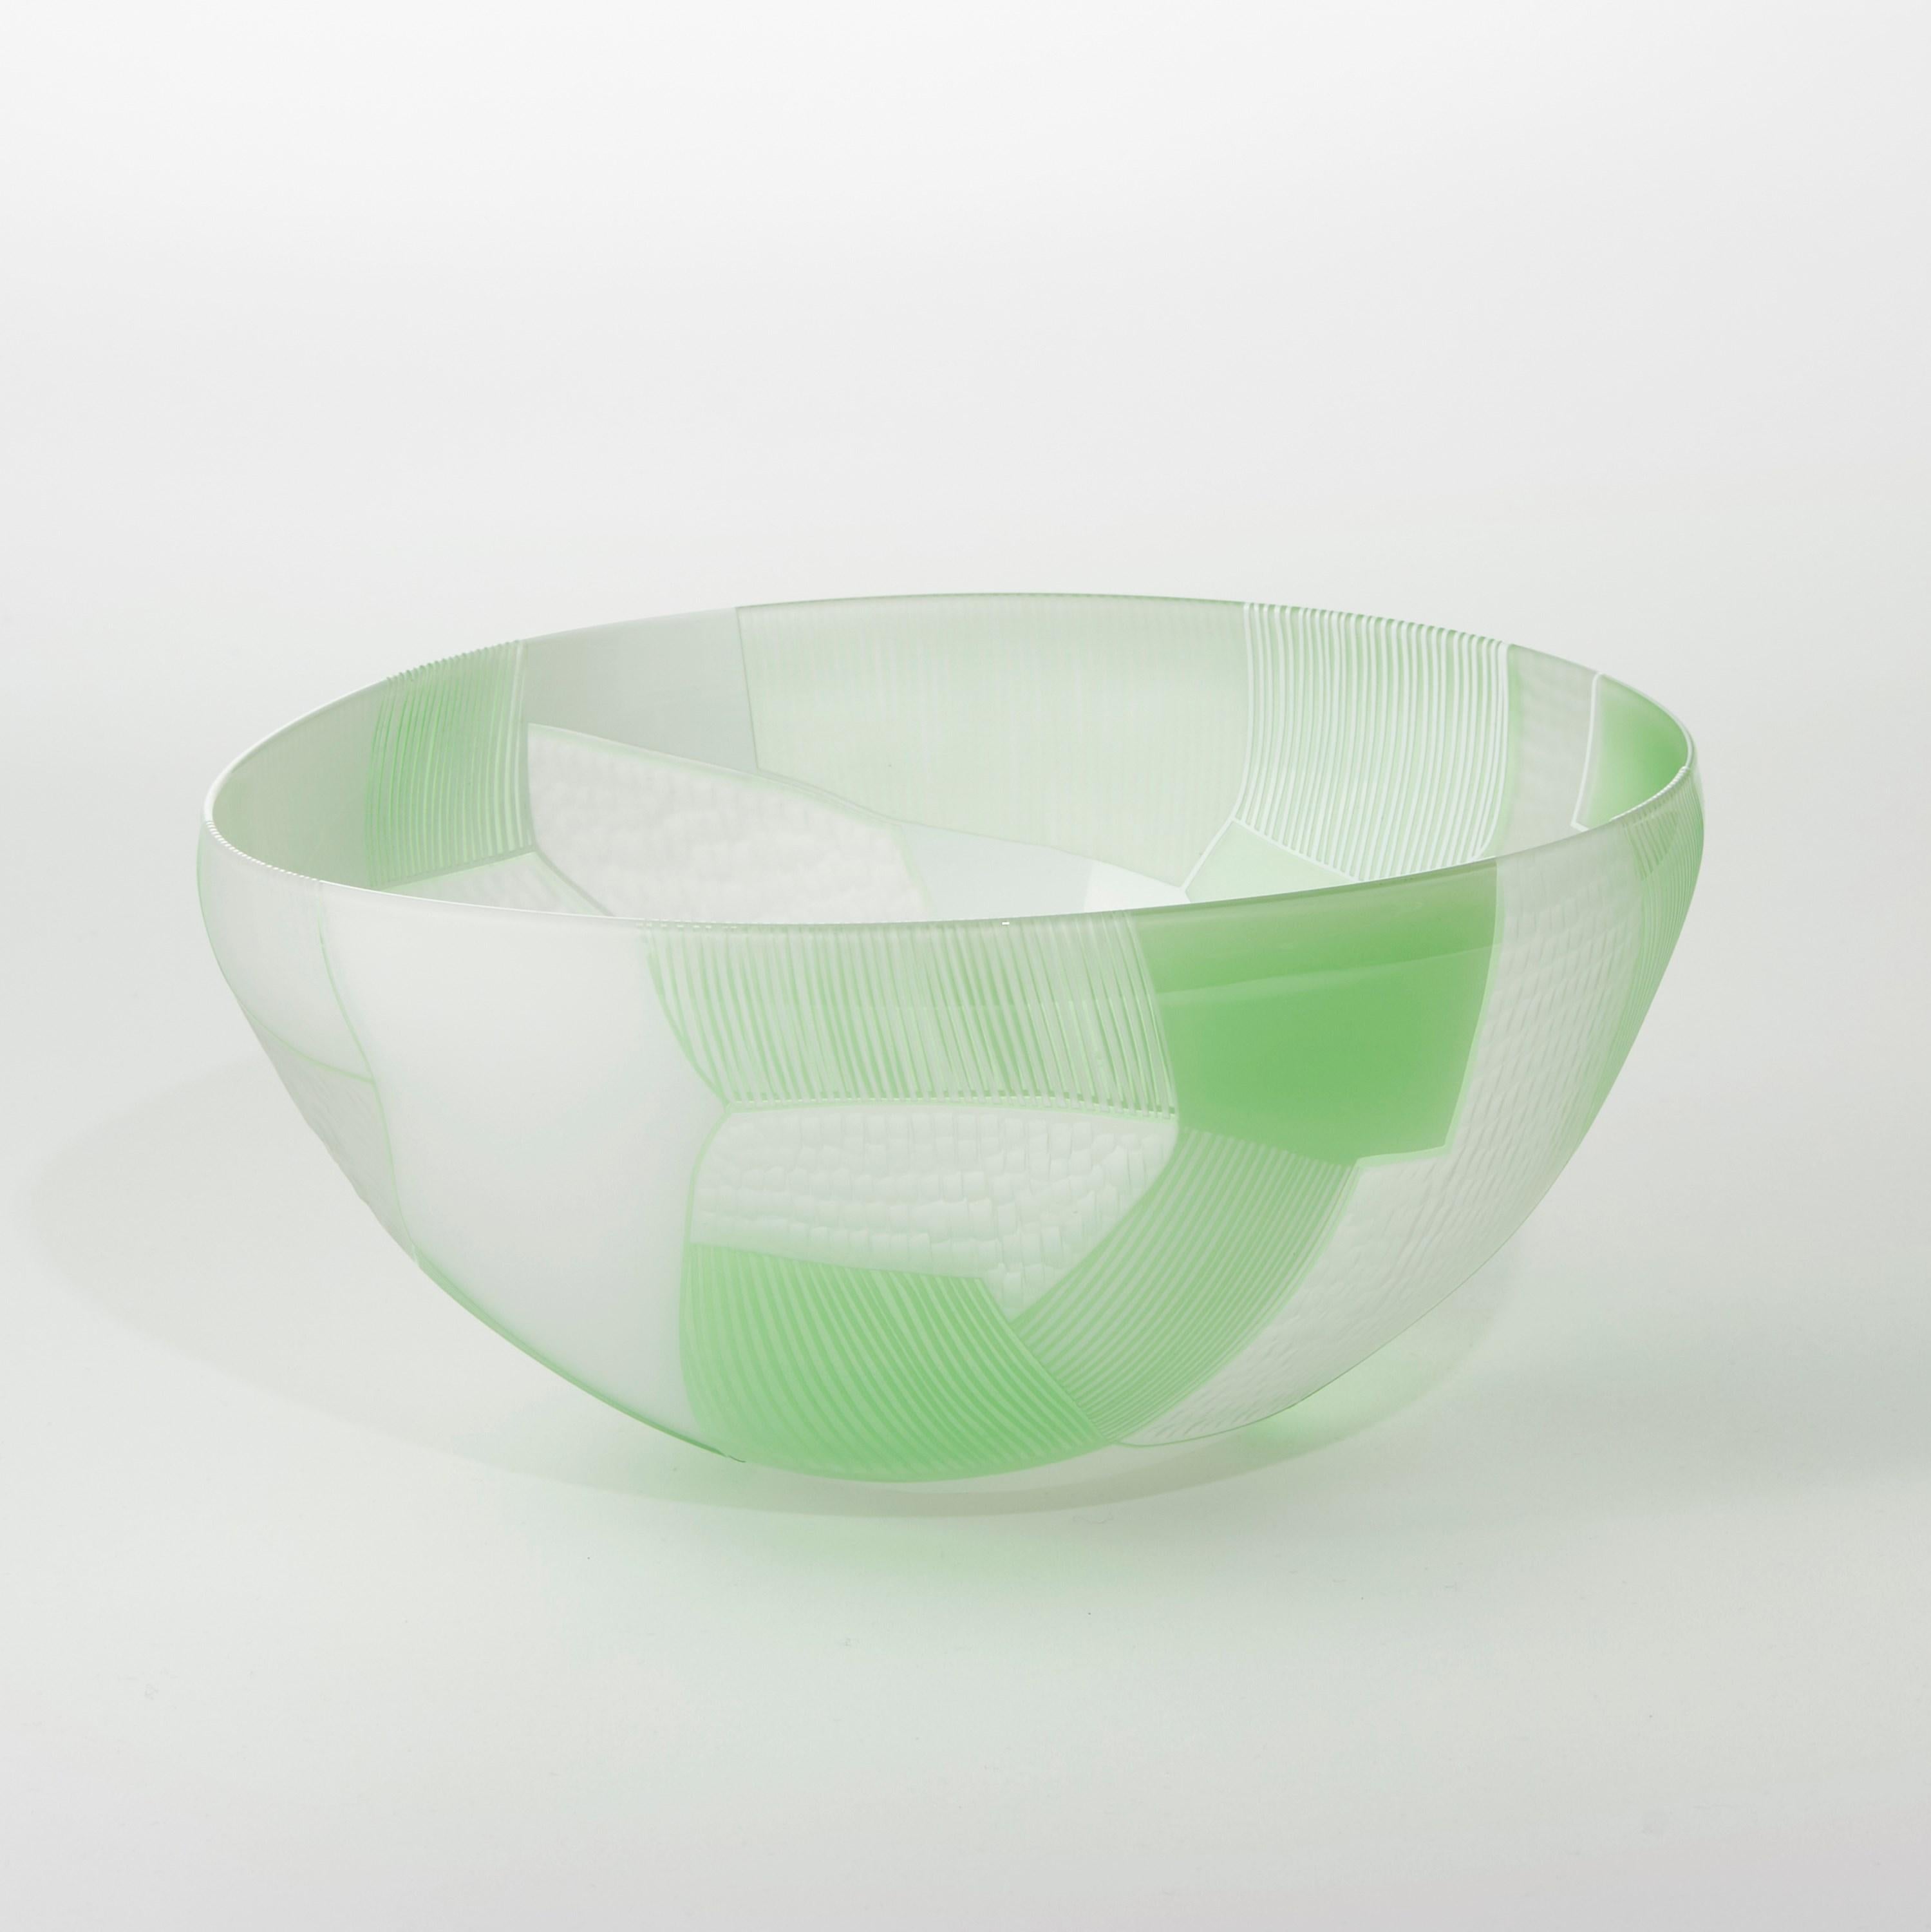  Bol en verre à motifs abstraits vert et blanc « Landscape Study » de Kate Jones